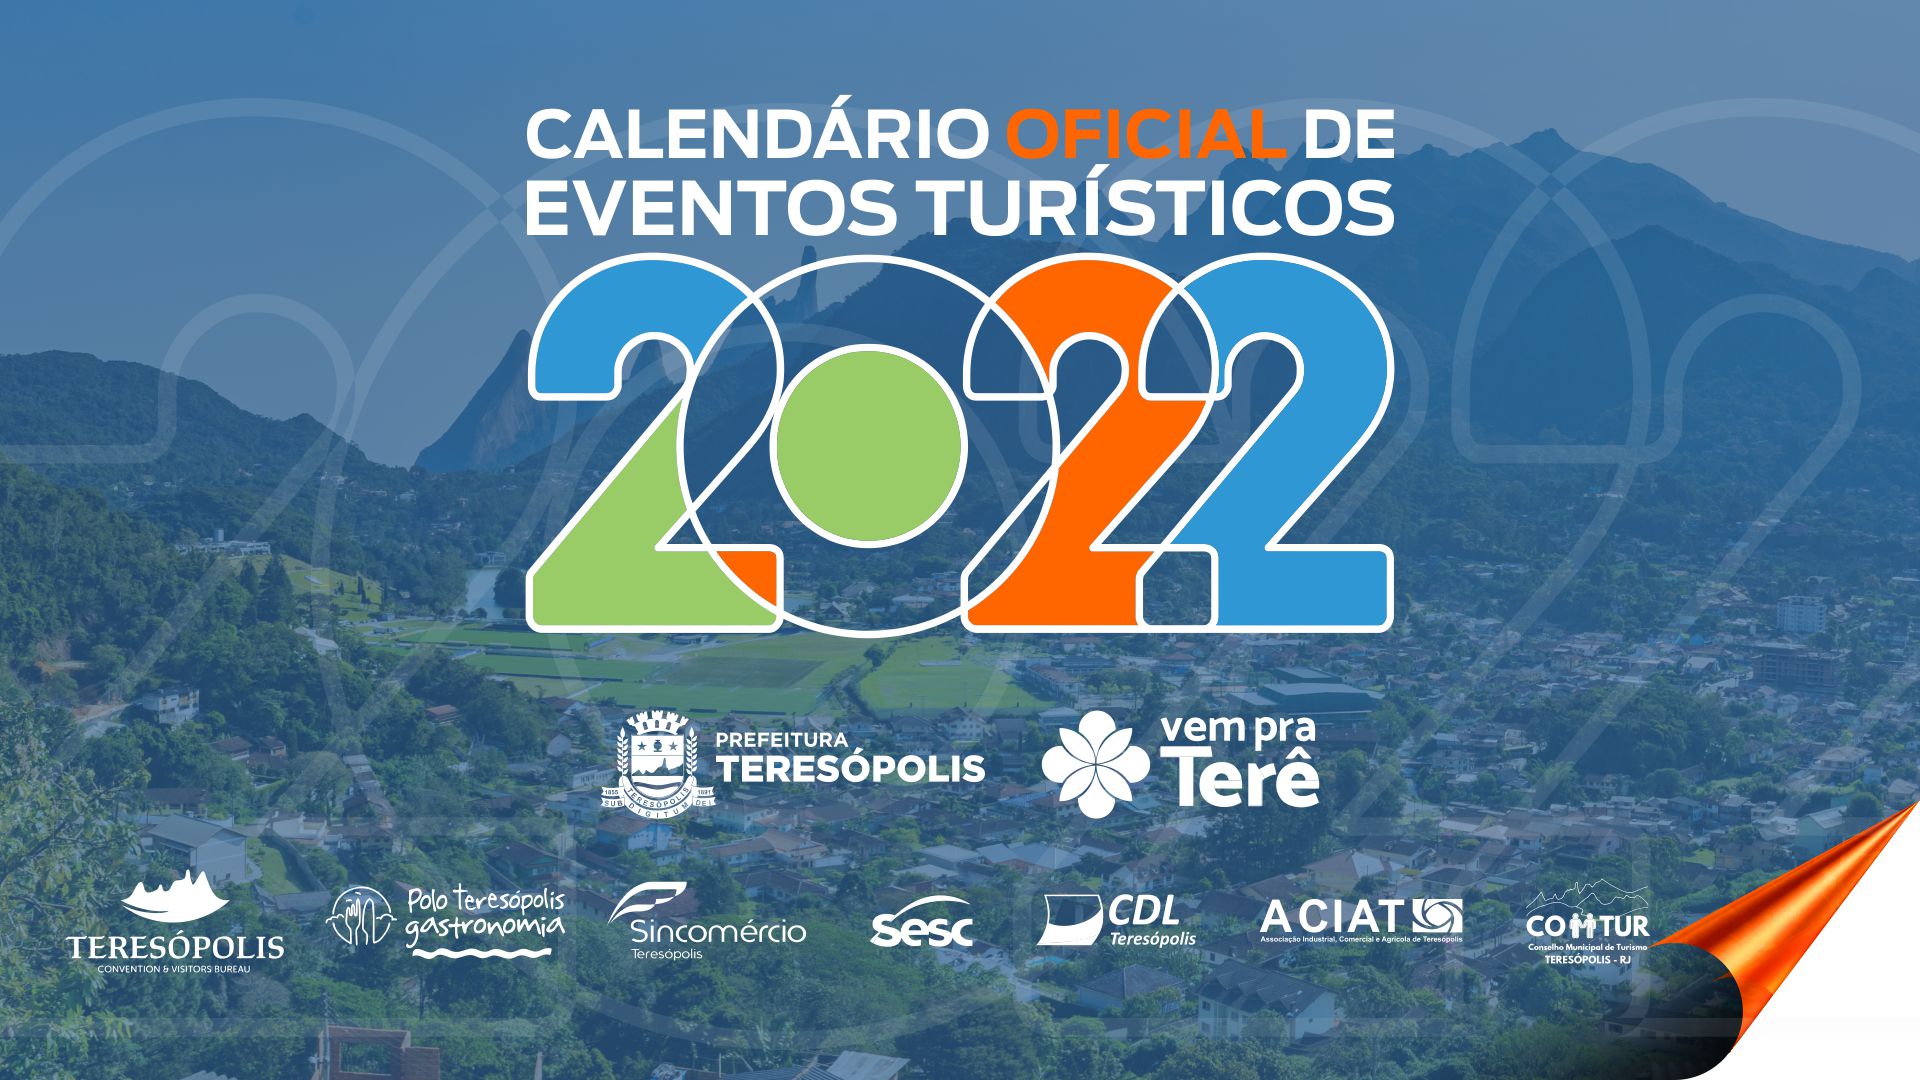 Você está visualizando atualmente ‘Vem pra Terê’: Teresópolis lança o calendário de eventos turísticos 2022 nesta quarta-feira, 29/12